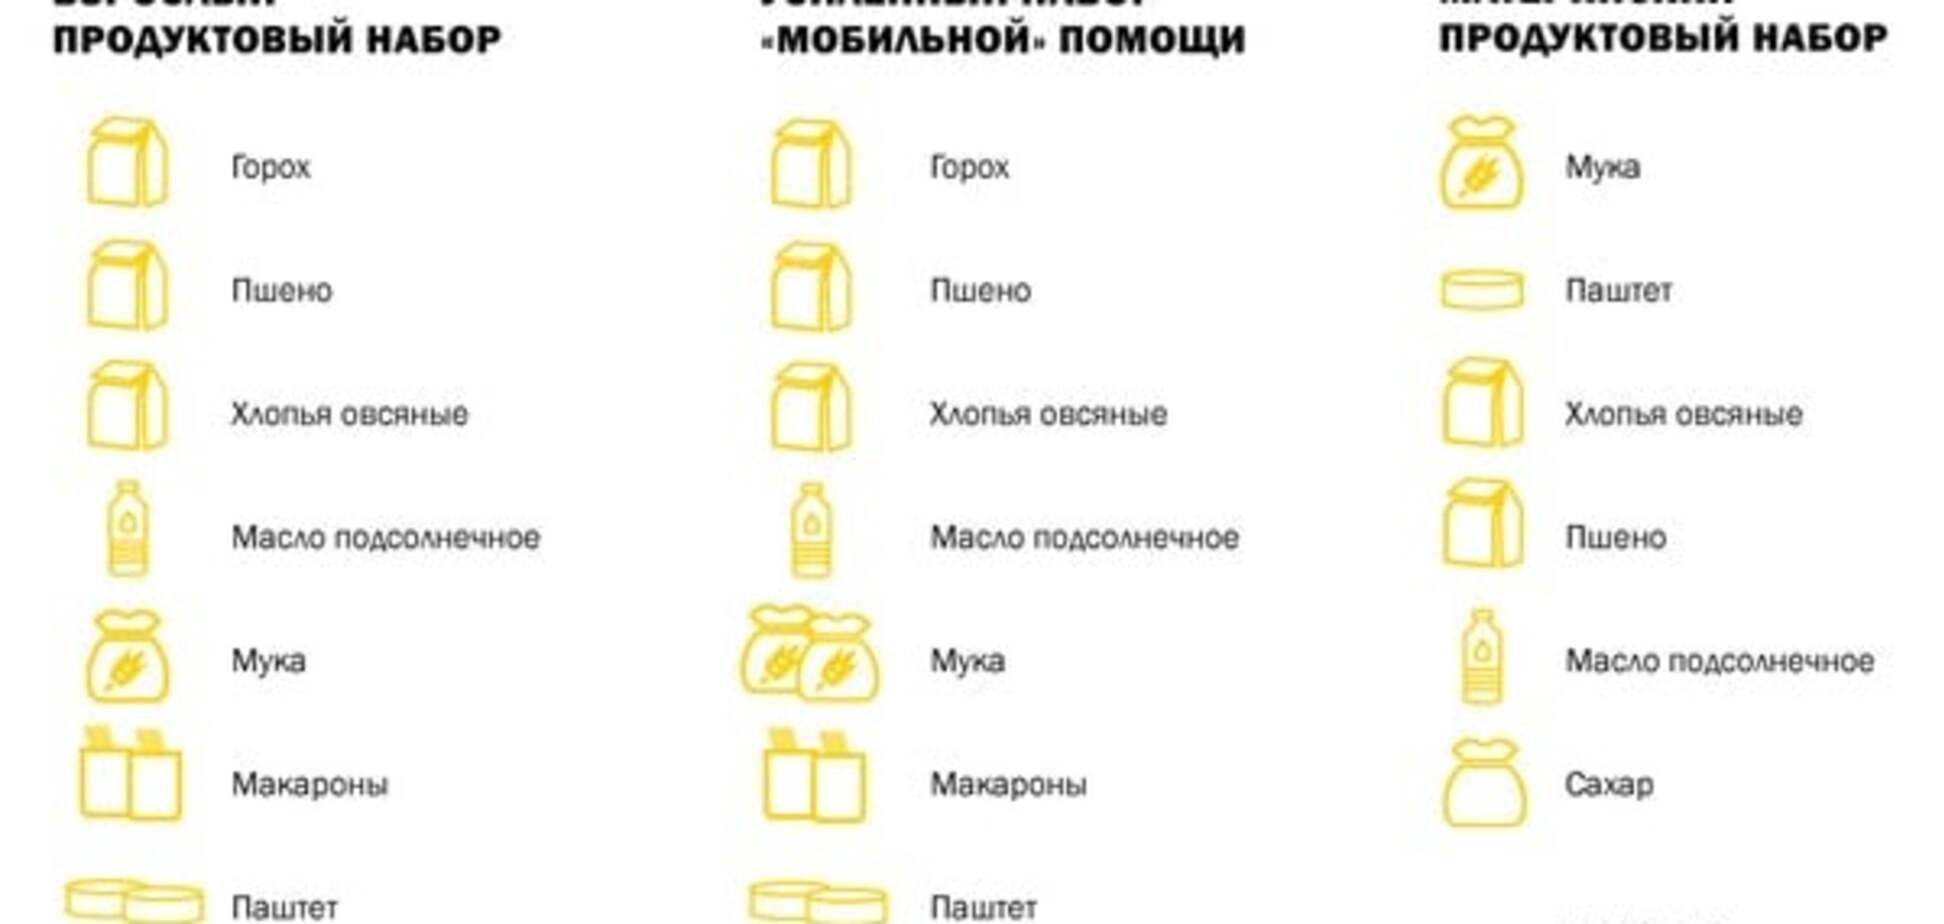 Штаб Ахметова обновил составы проднаборов для жителей Донбасса